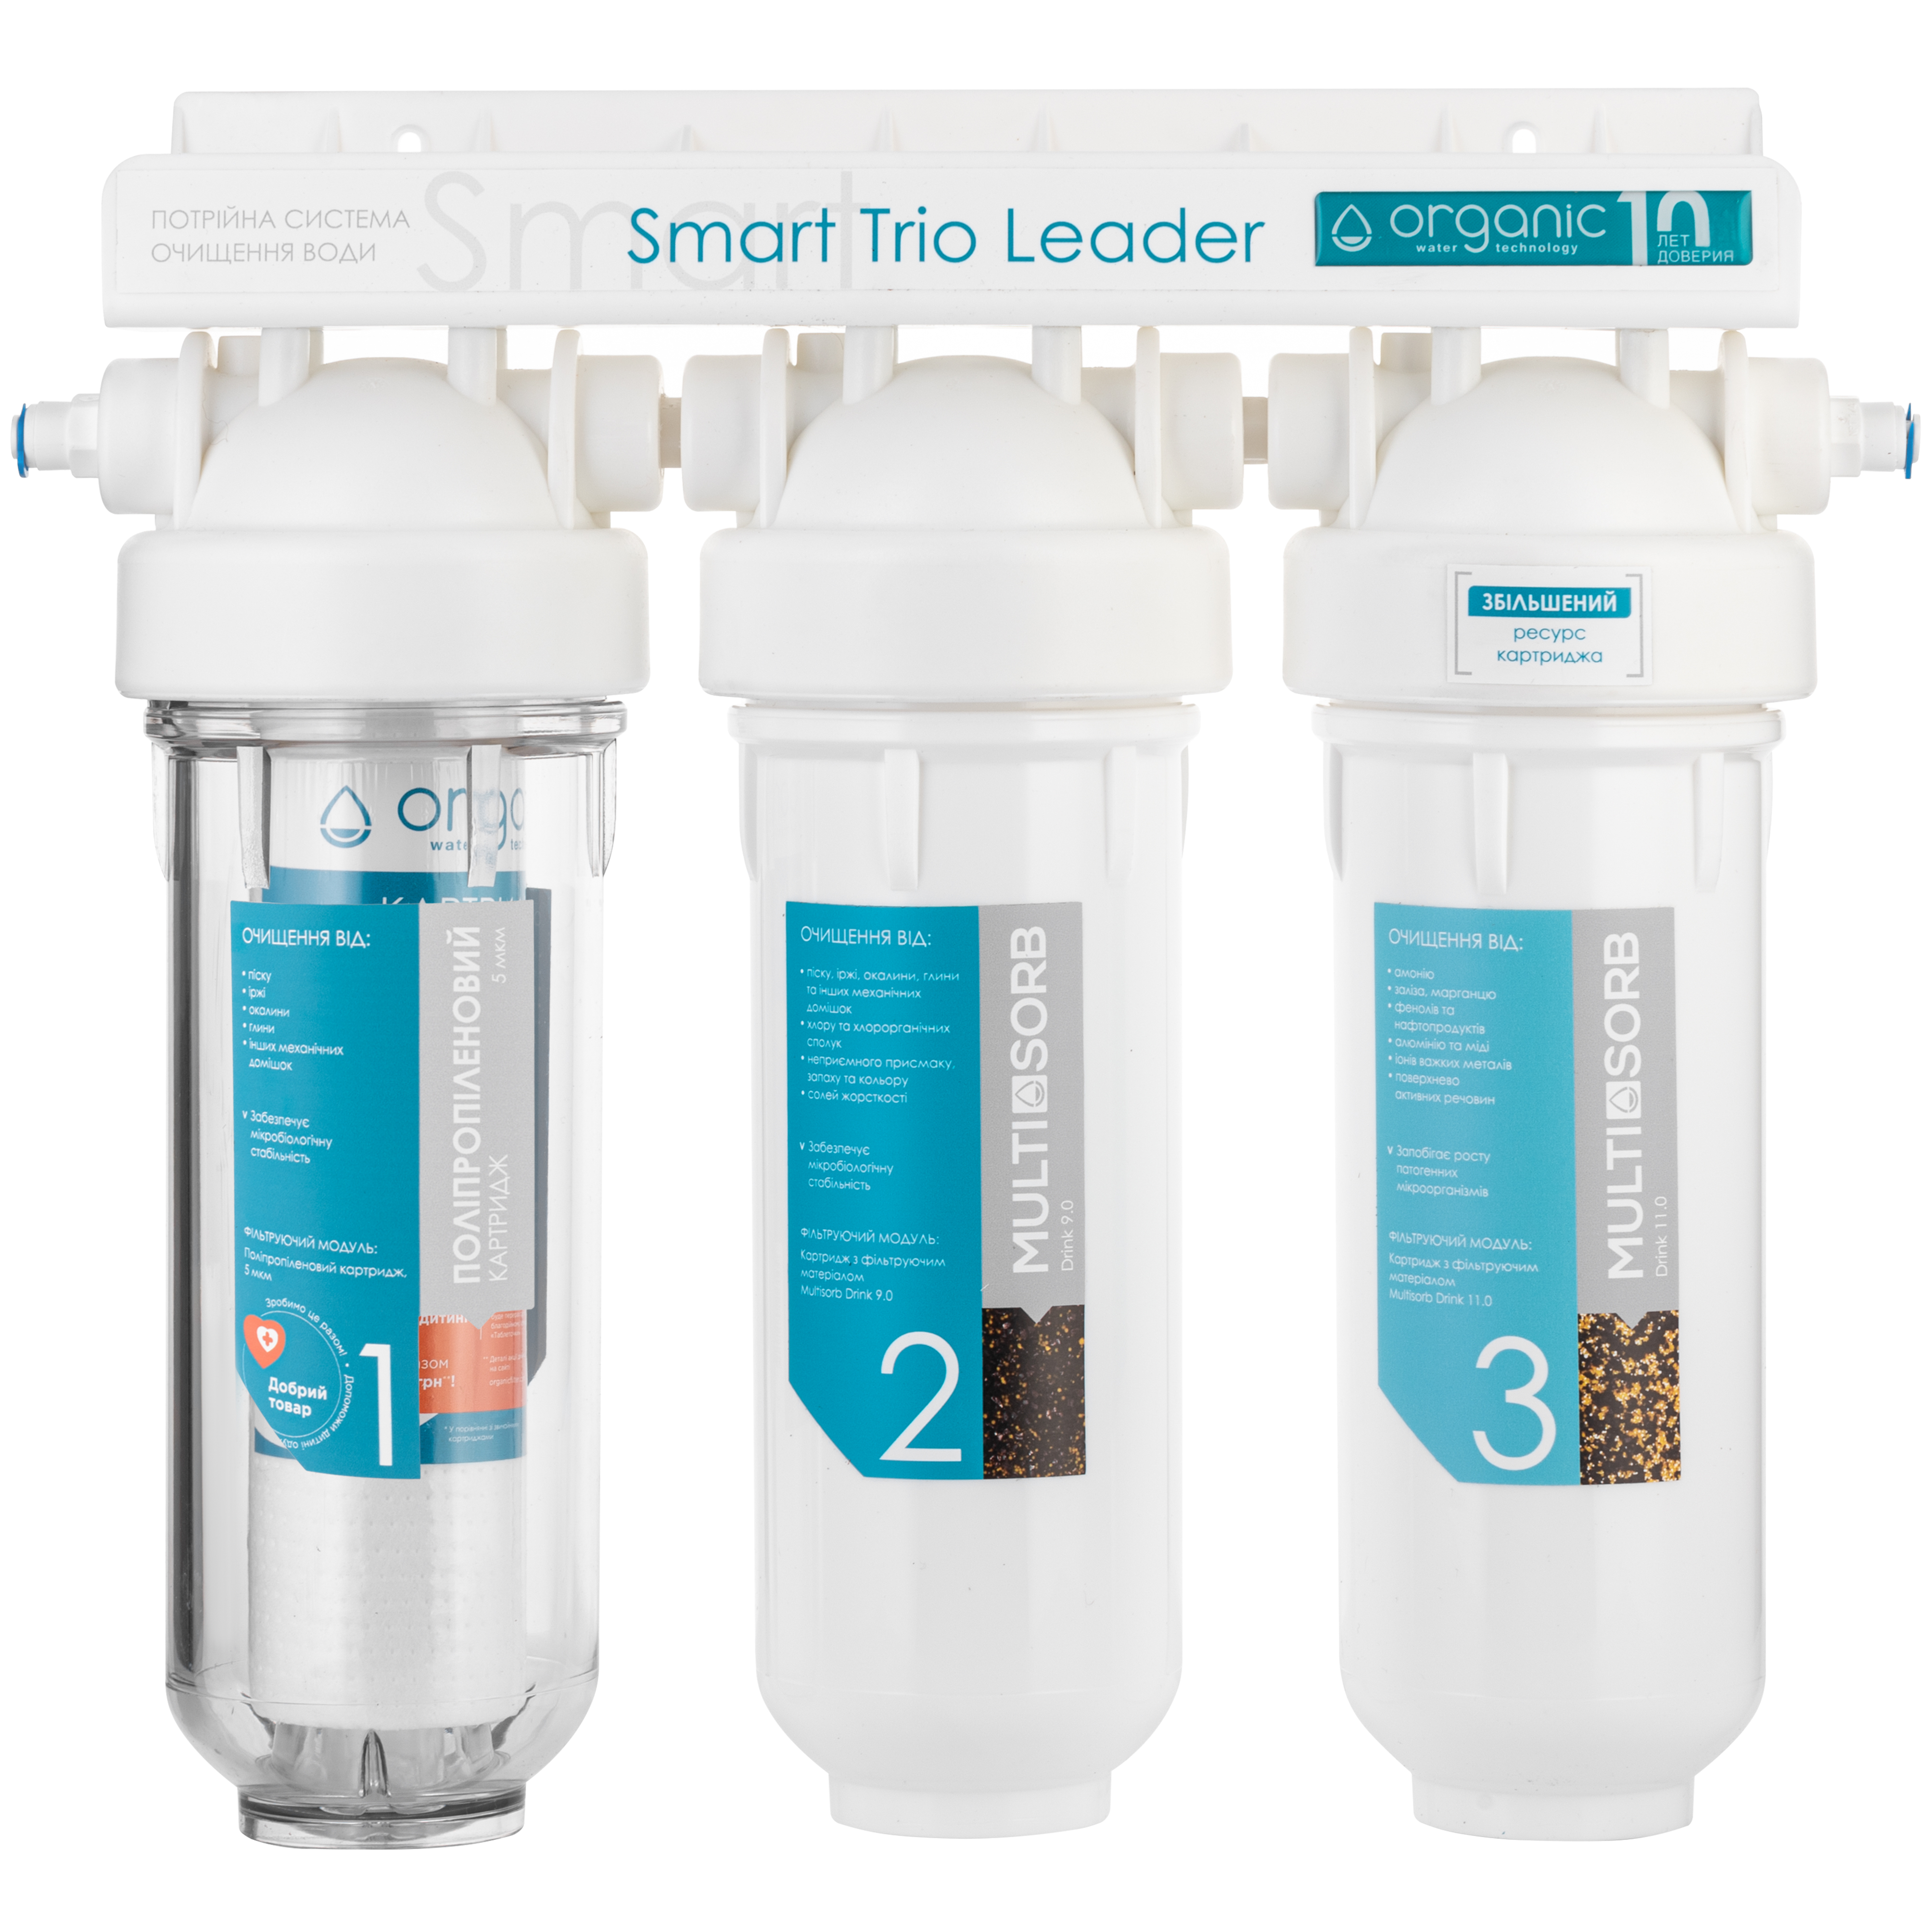 Инструкция проточный фильтр для воды Organic Smart TRIO LEADER